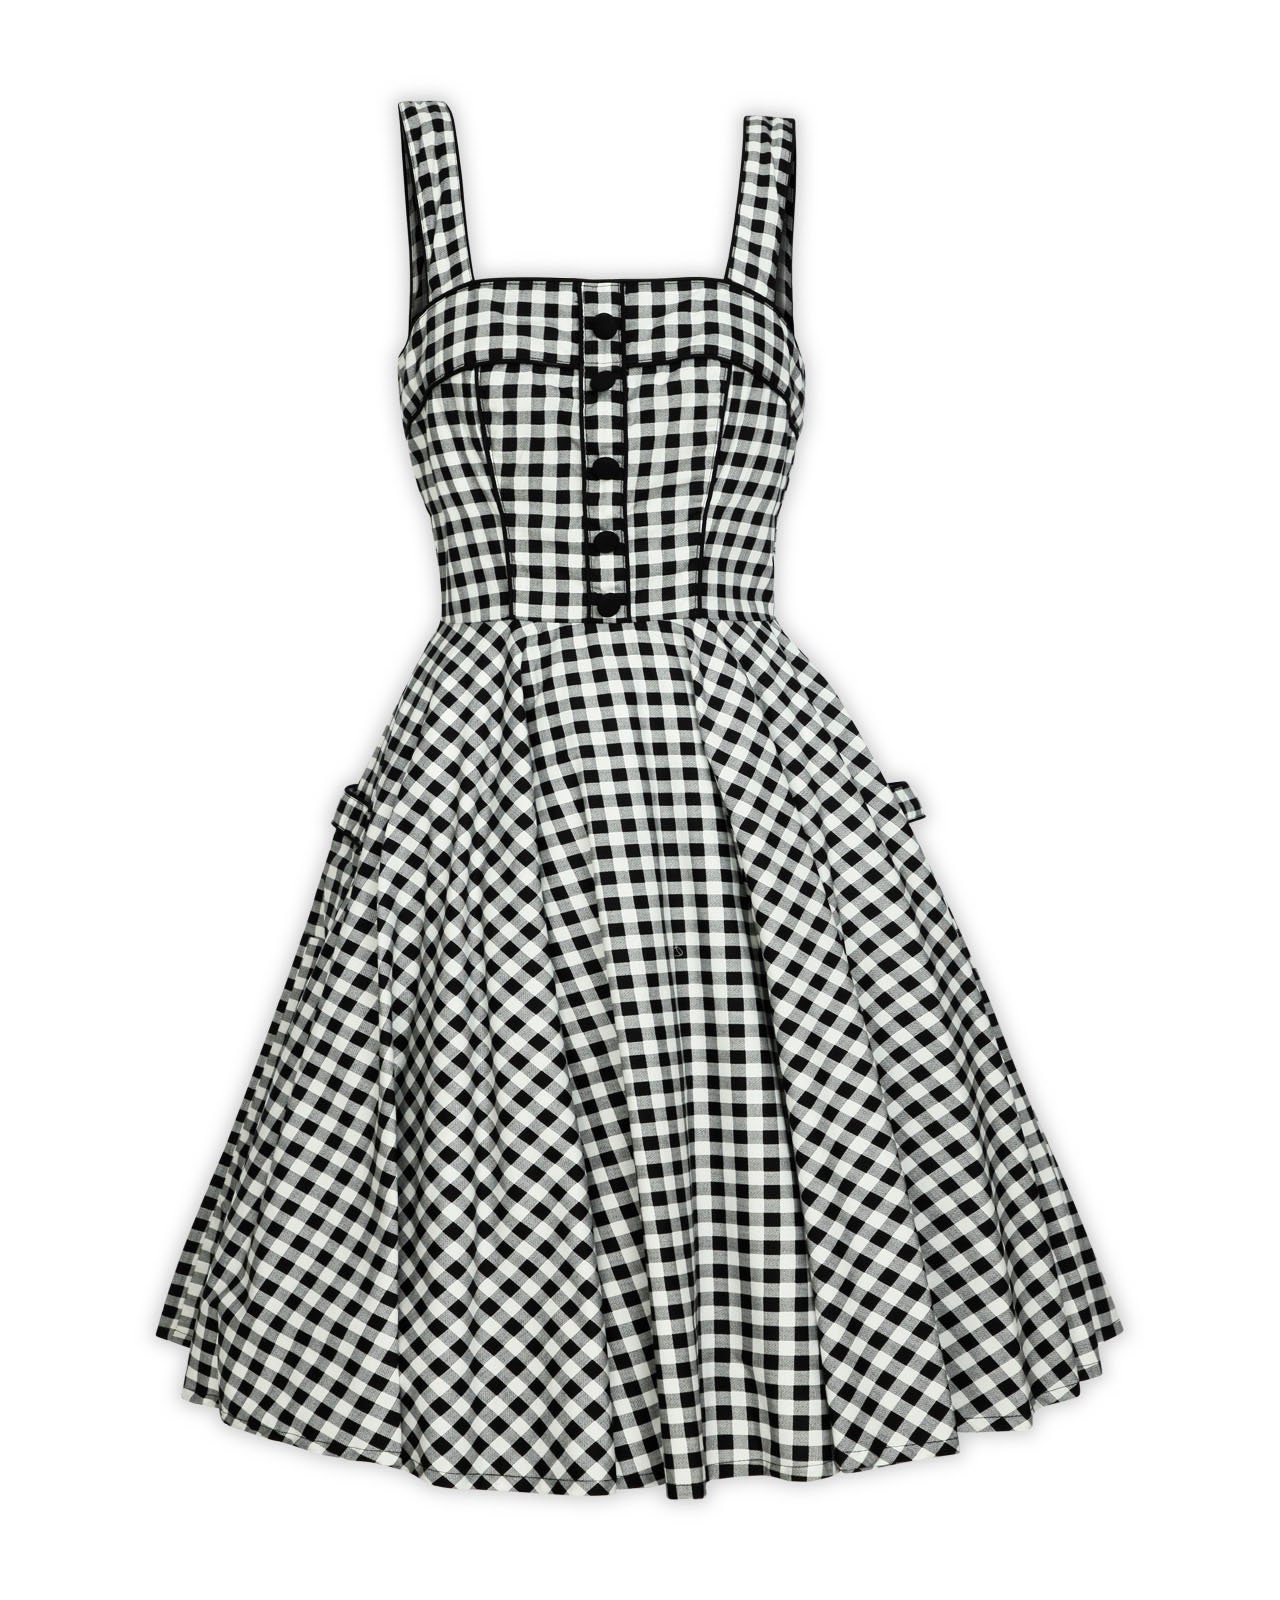 Black White Gingham Dress Checkered Dress Summer Dress Vintage - Etsy UK